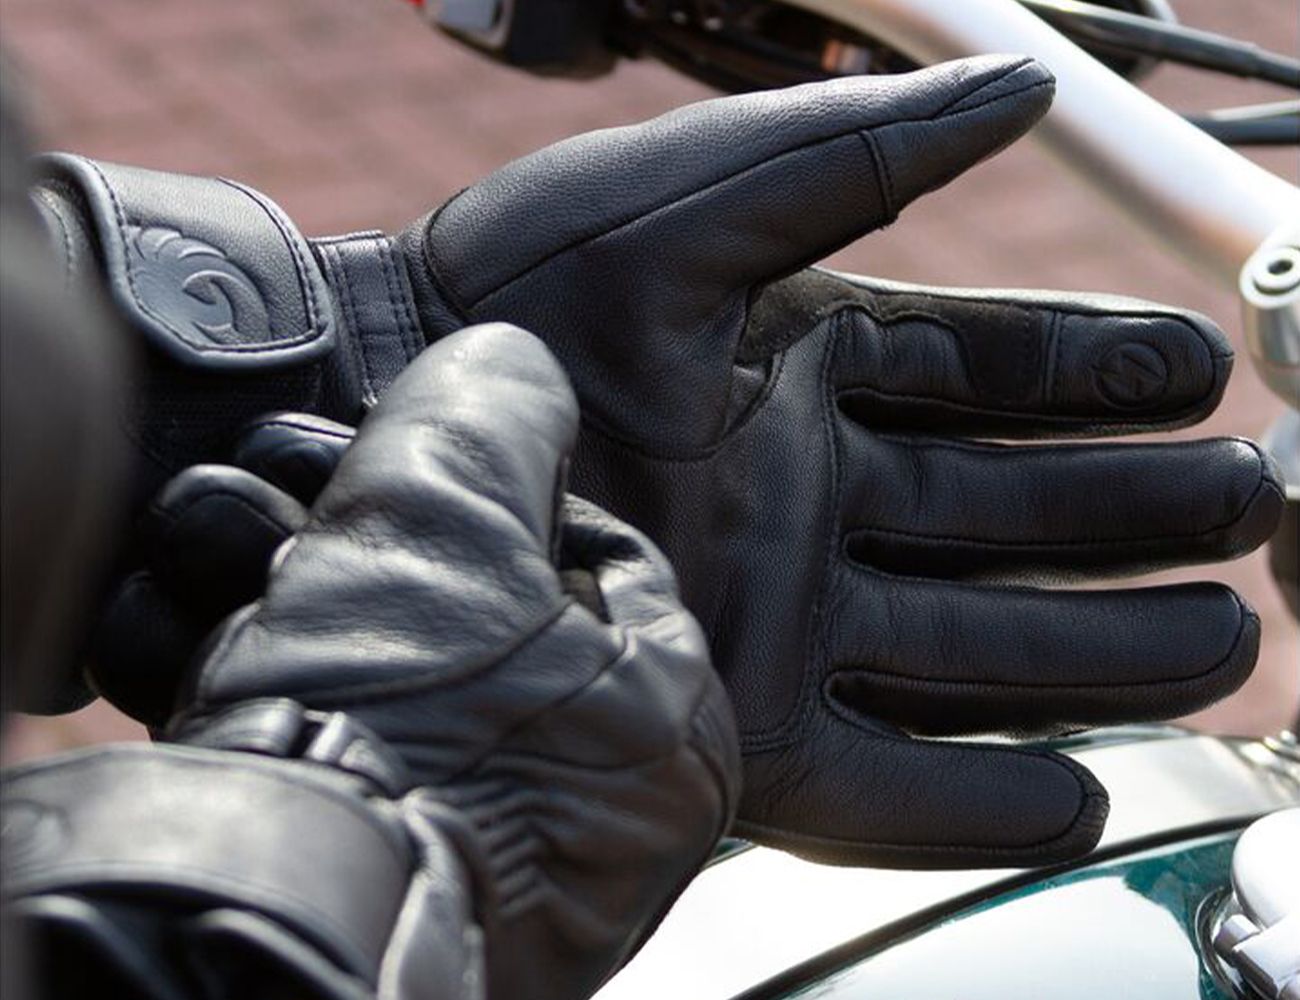  BORLENI Winter Motorcycle Gloves Waterproof Motorcycle Riding  Gloves Warm Windproof Motorcycle Gloves for Men Women : Automotive